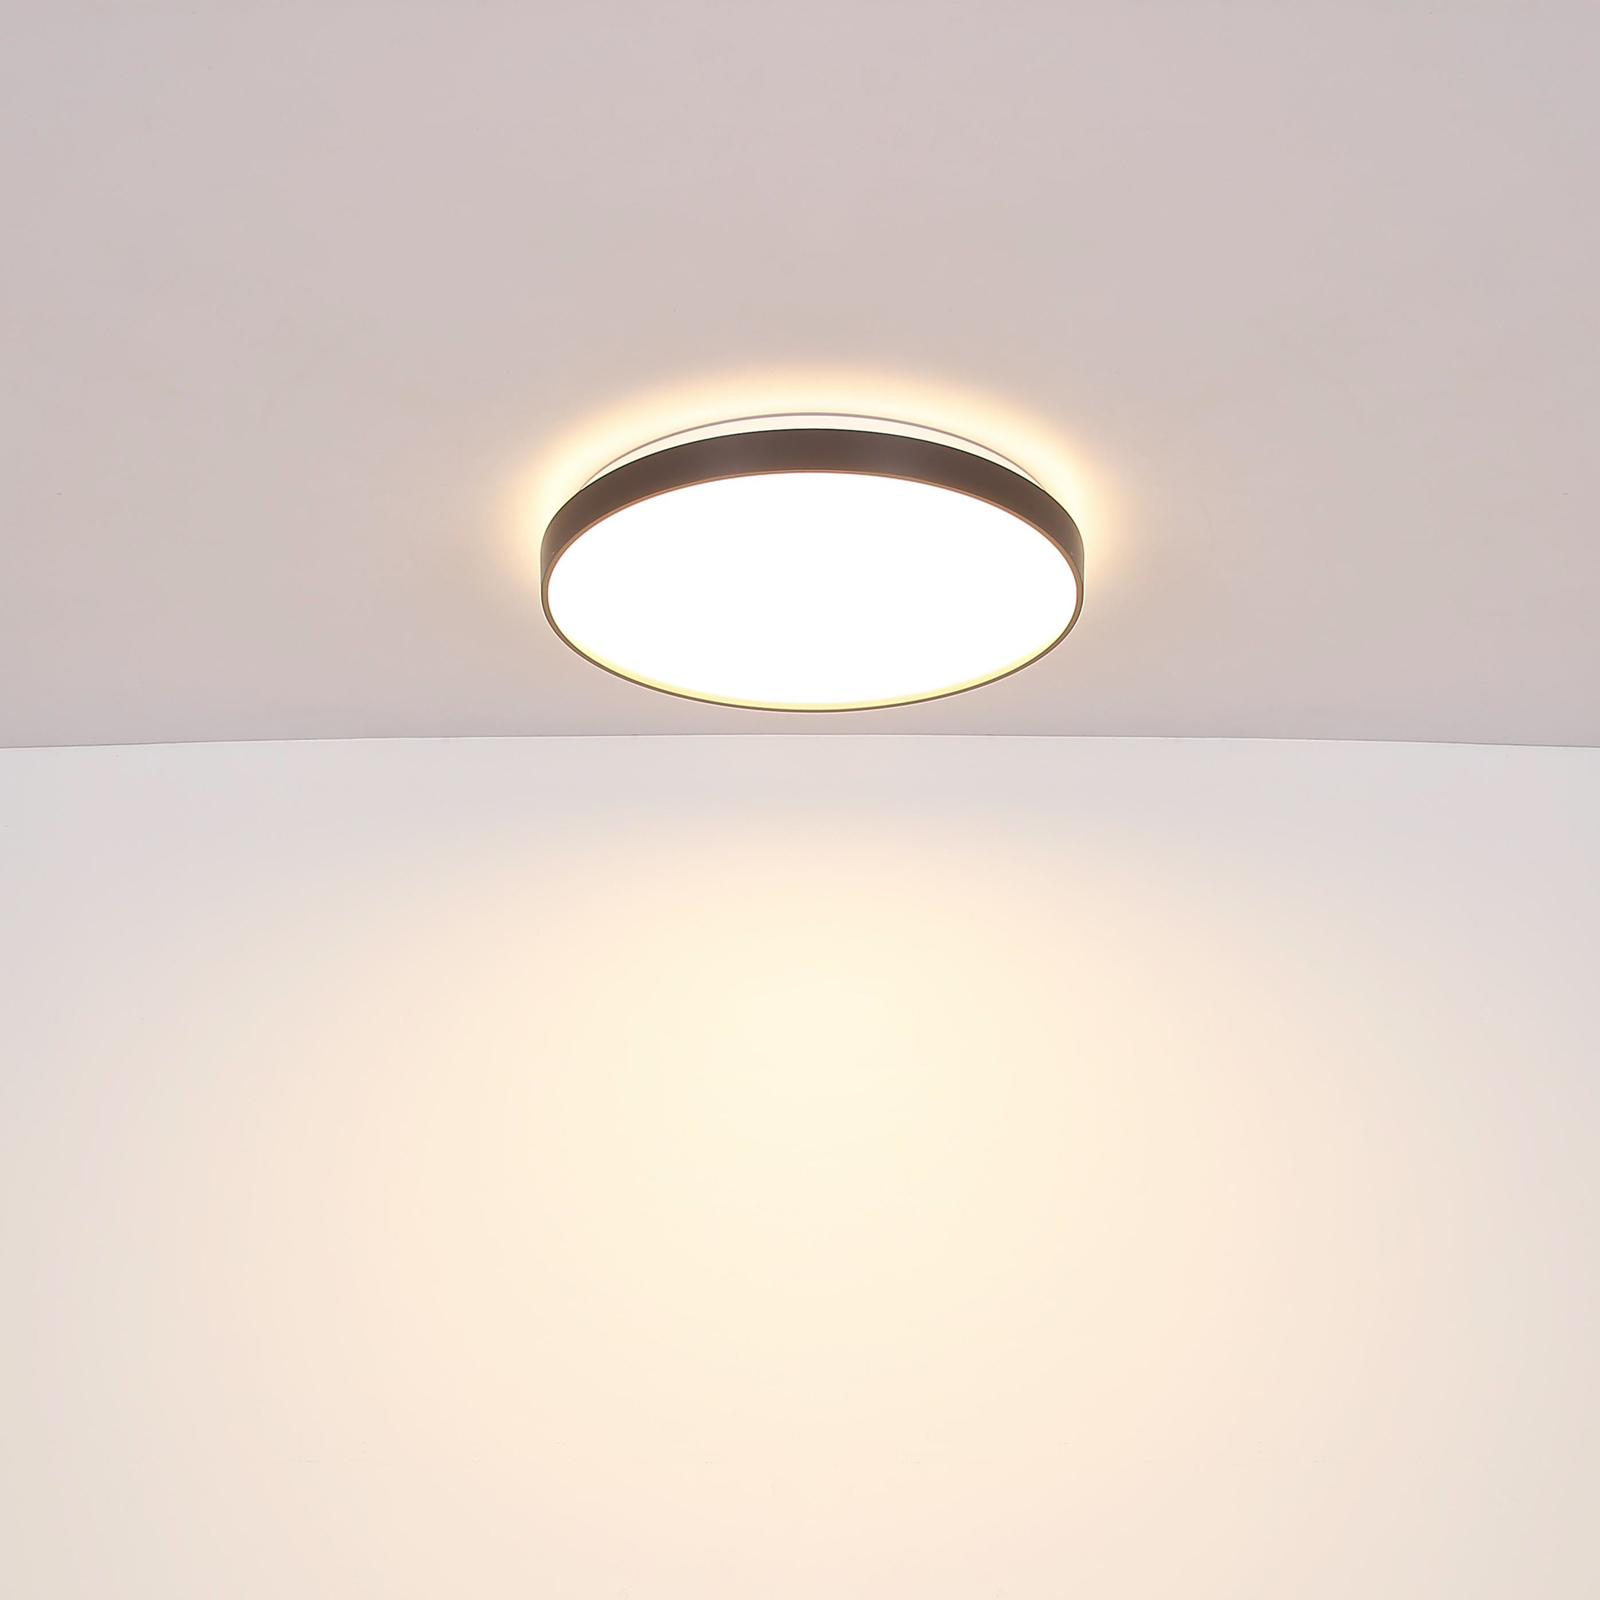 Eclypse LED stropno svjetlo, antracit, Ø 48 cm, akril/metal